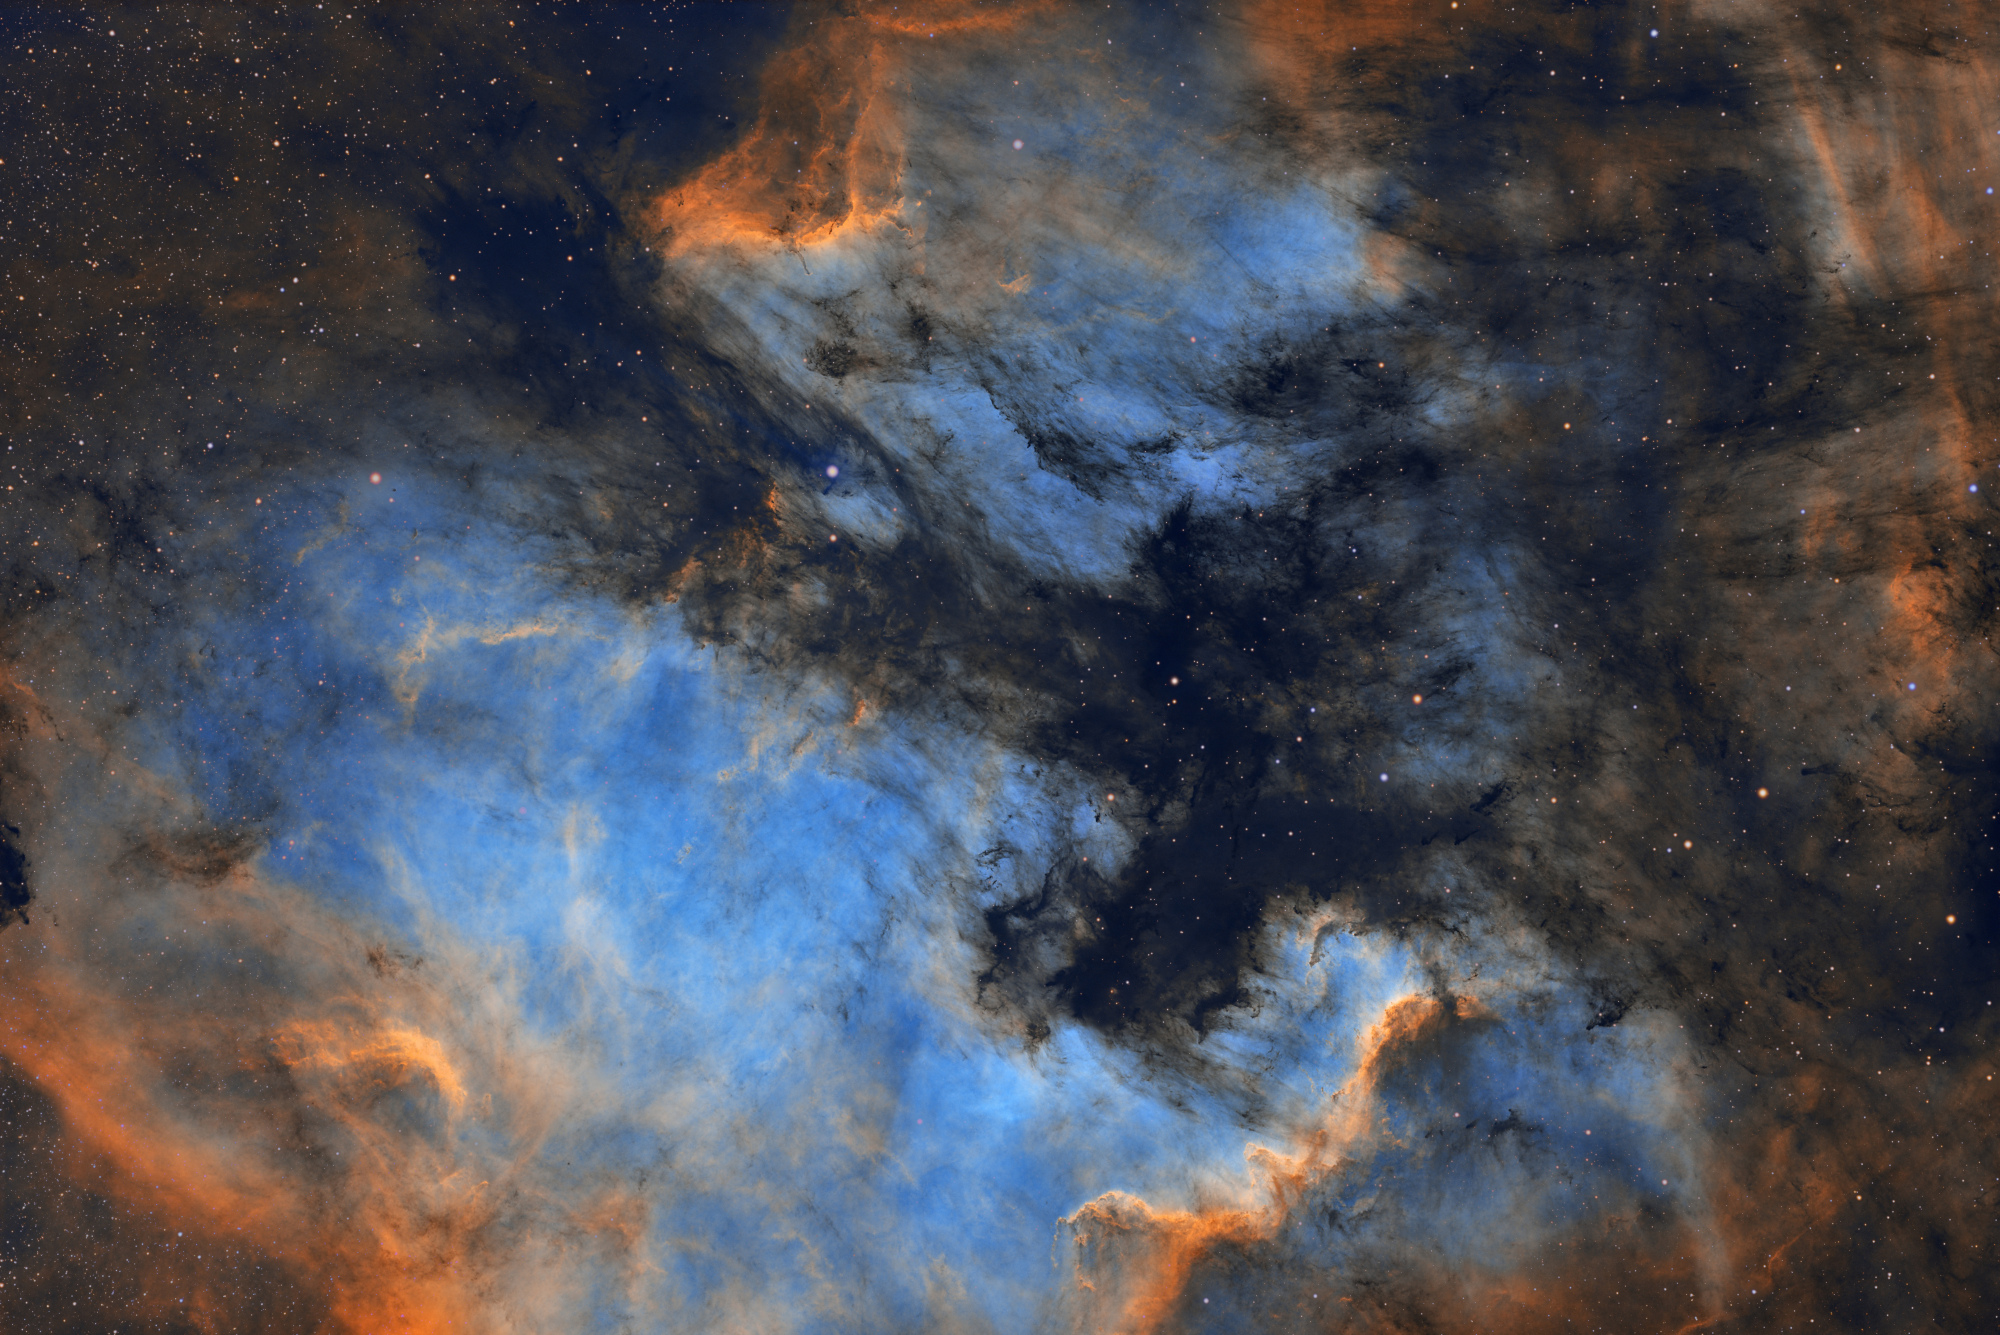 18_NGC7000.thumb.jpg.a71b91533a544c6c600644e2c6a2c8e6.jpg